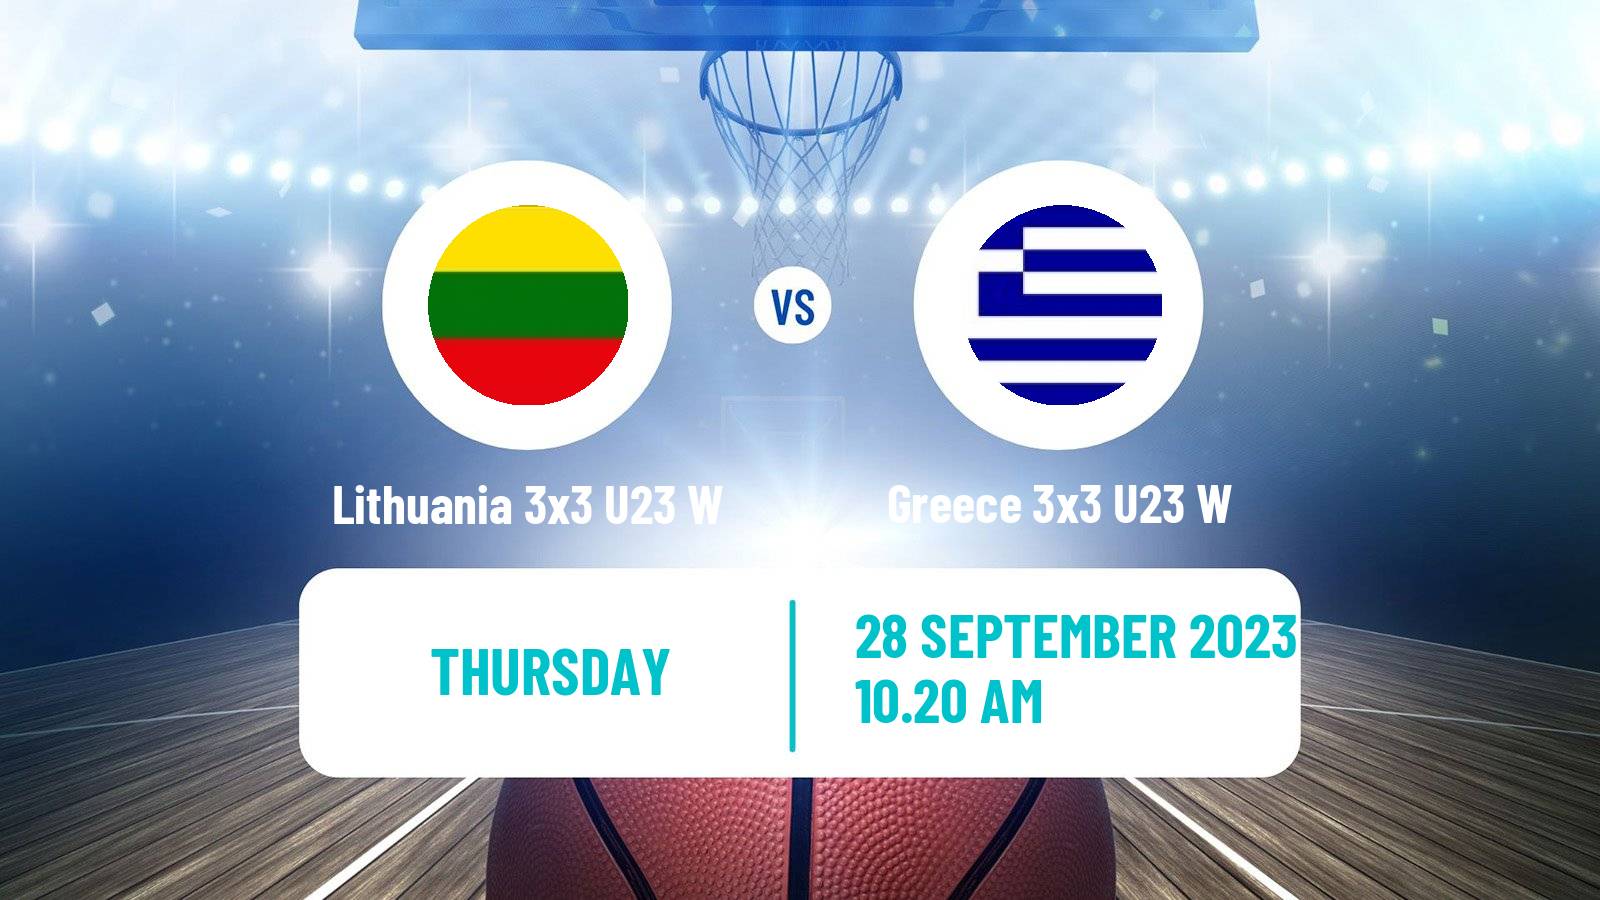 Basketball World Cup Basketball 3x3 U23 Women Lithuania 3x3 U23 W - Greece 3x3 U23 W